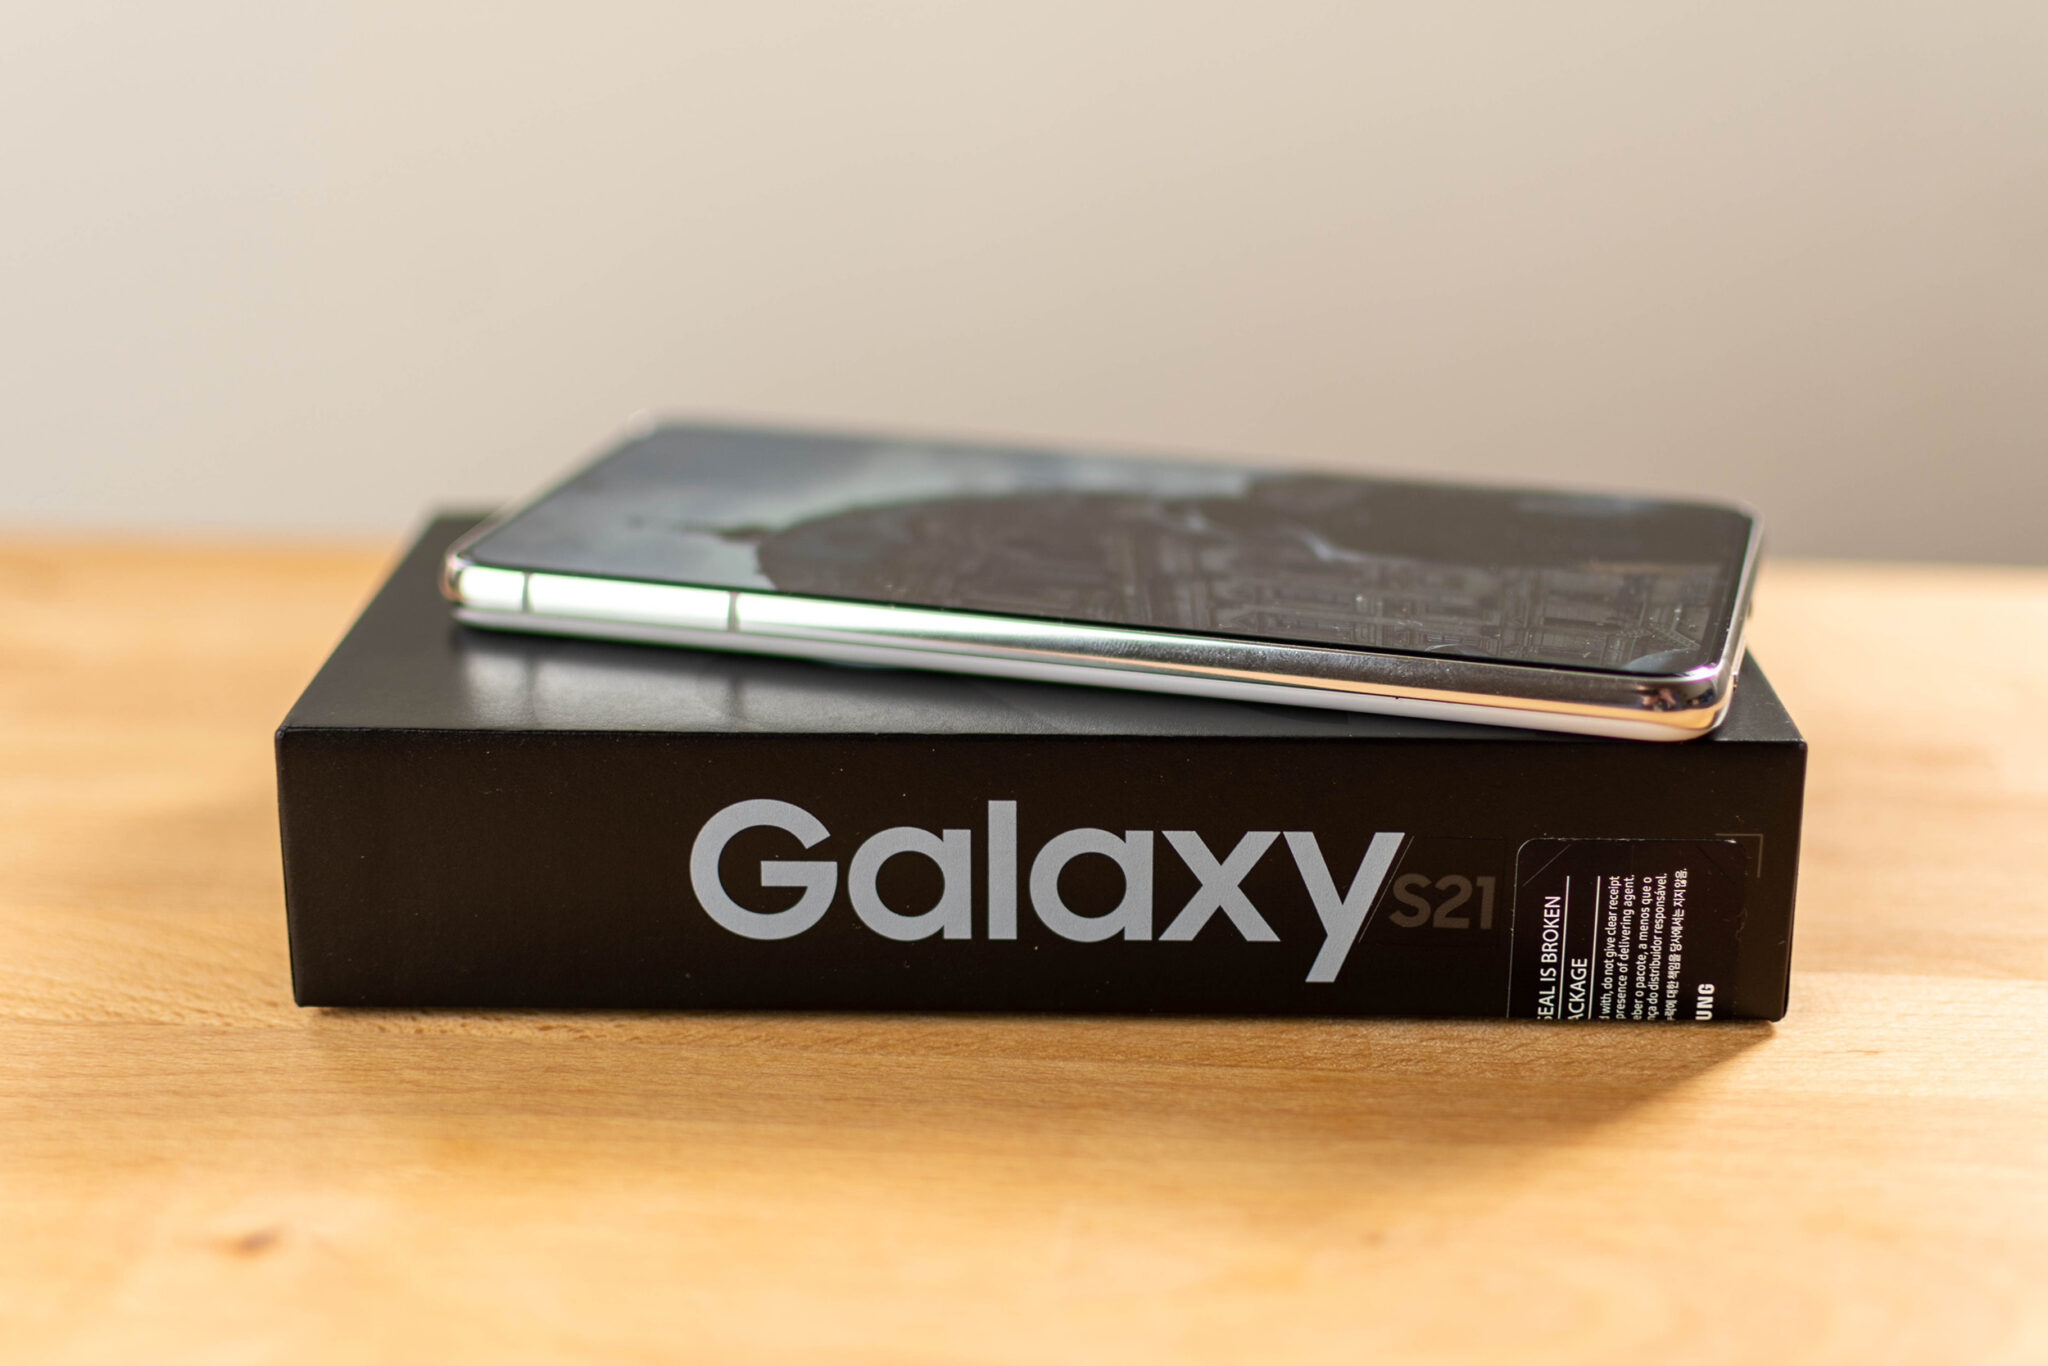 Der Lieferumfang des Galaxy S21 enthält kein Ladegerät mehr